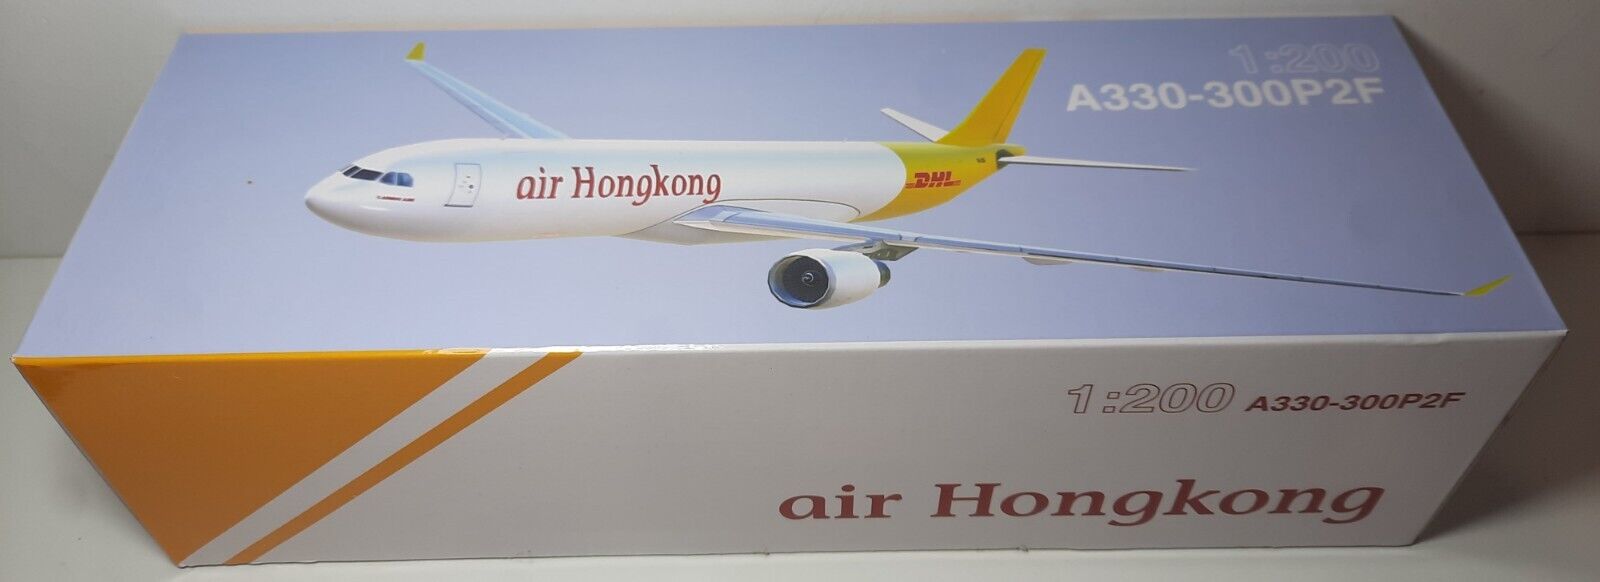 1:200 Lysia / Aero Le Plane A330-300P2F air Hongkong / DHL